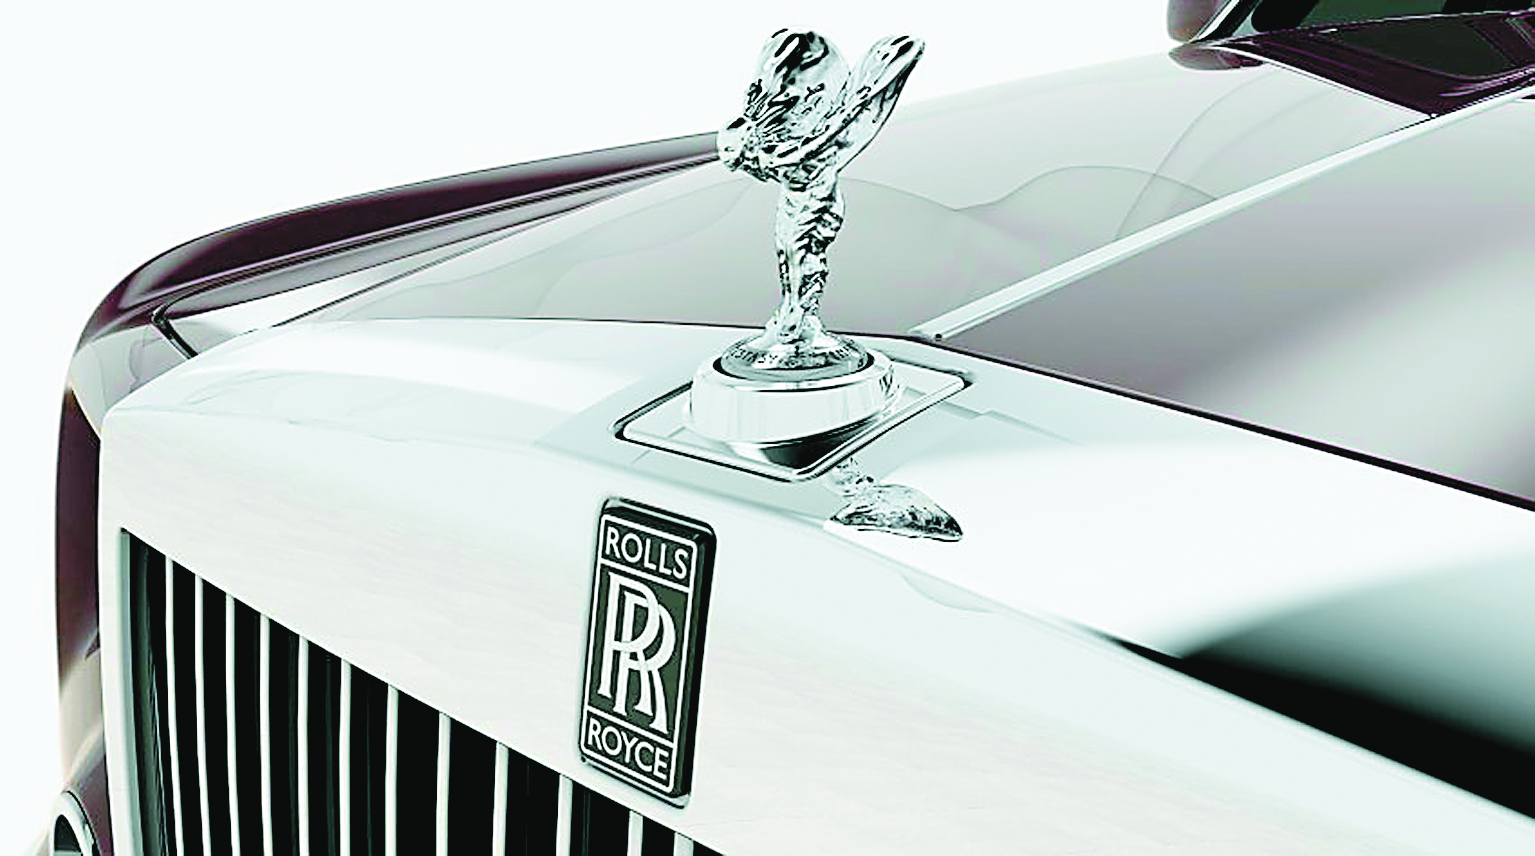 Πωλείται Rolls-Royce με μόλις 8.990 ευρώ!